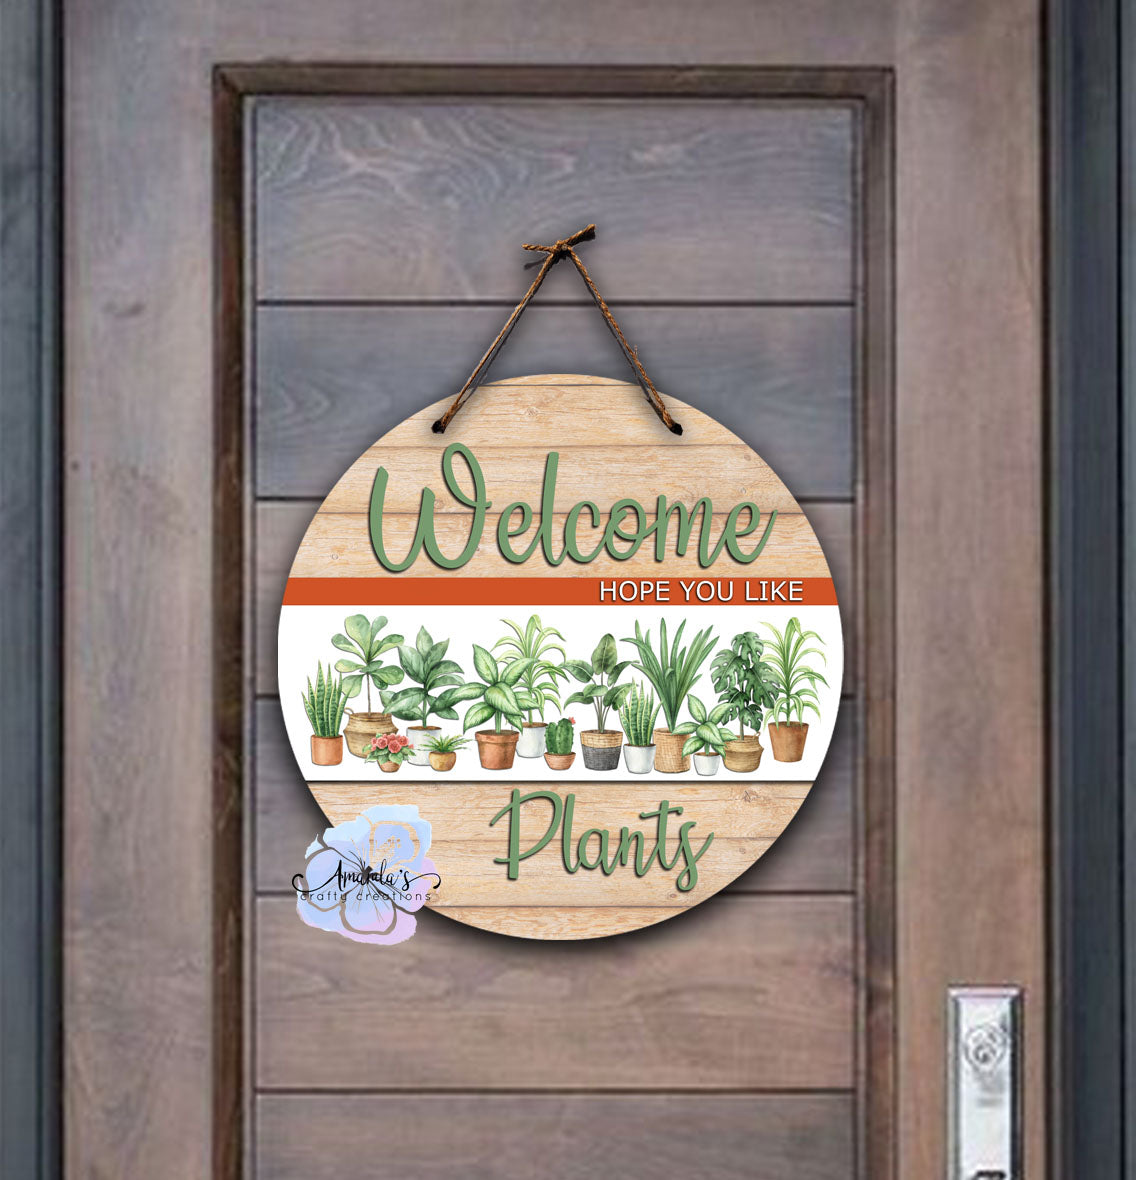 "Welcome Plants" door Hanger, Plant lover door hanger, plant lover welcome sign, Plants, Plant lover, Round door hanger